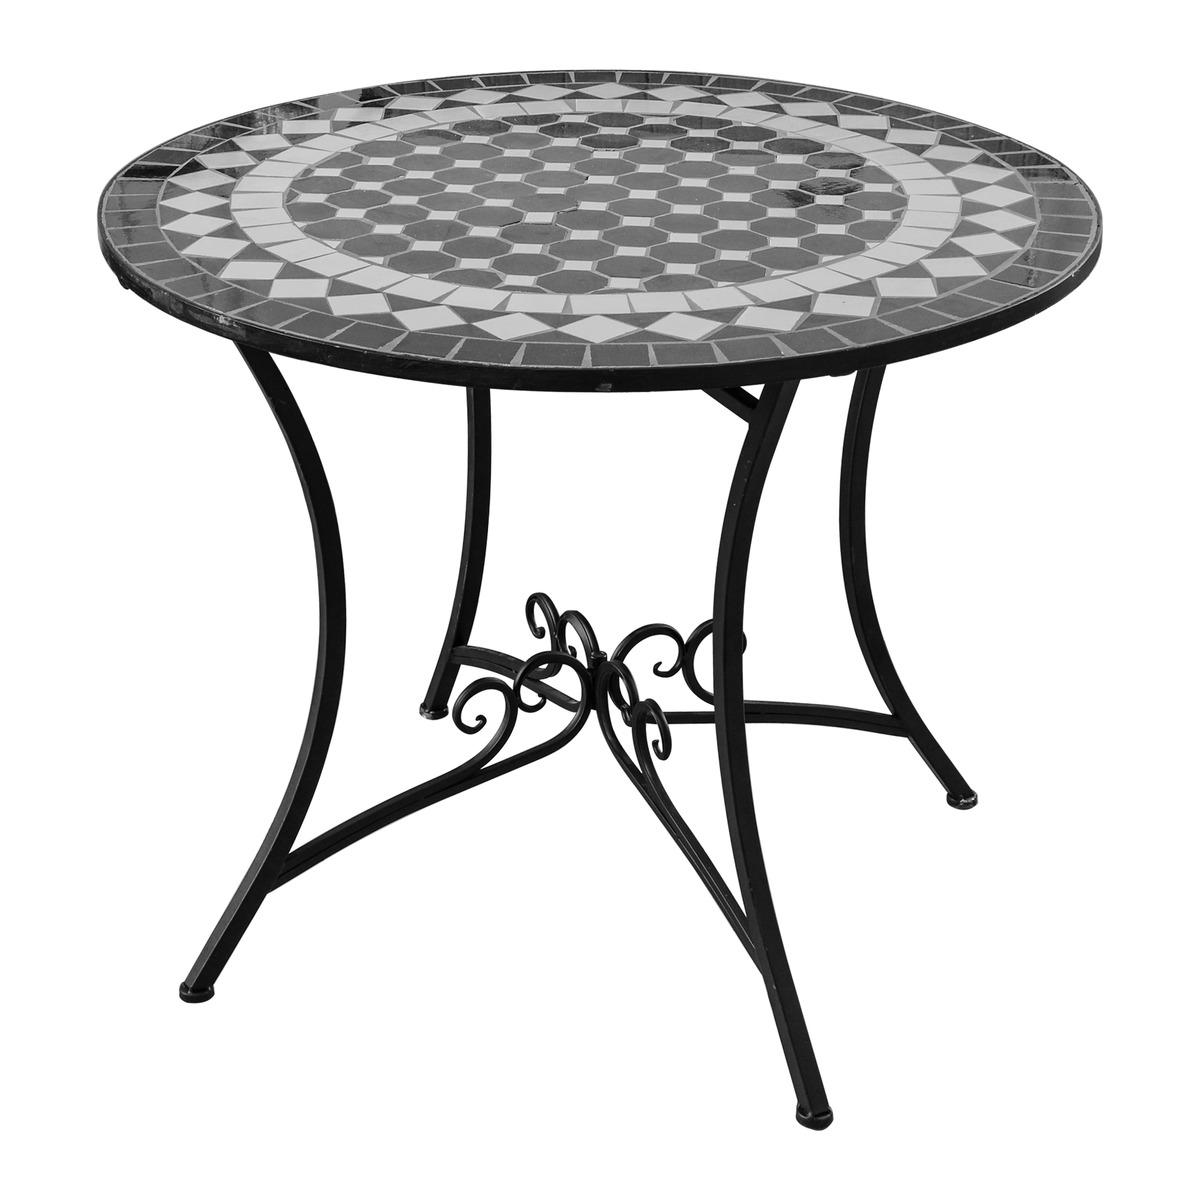 Table ronde Fès en acier décor mosaïque - Diamètre 90 x H 72 cm - Blanc, noir